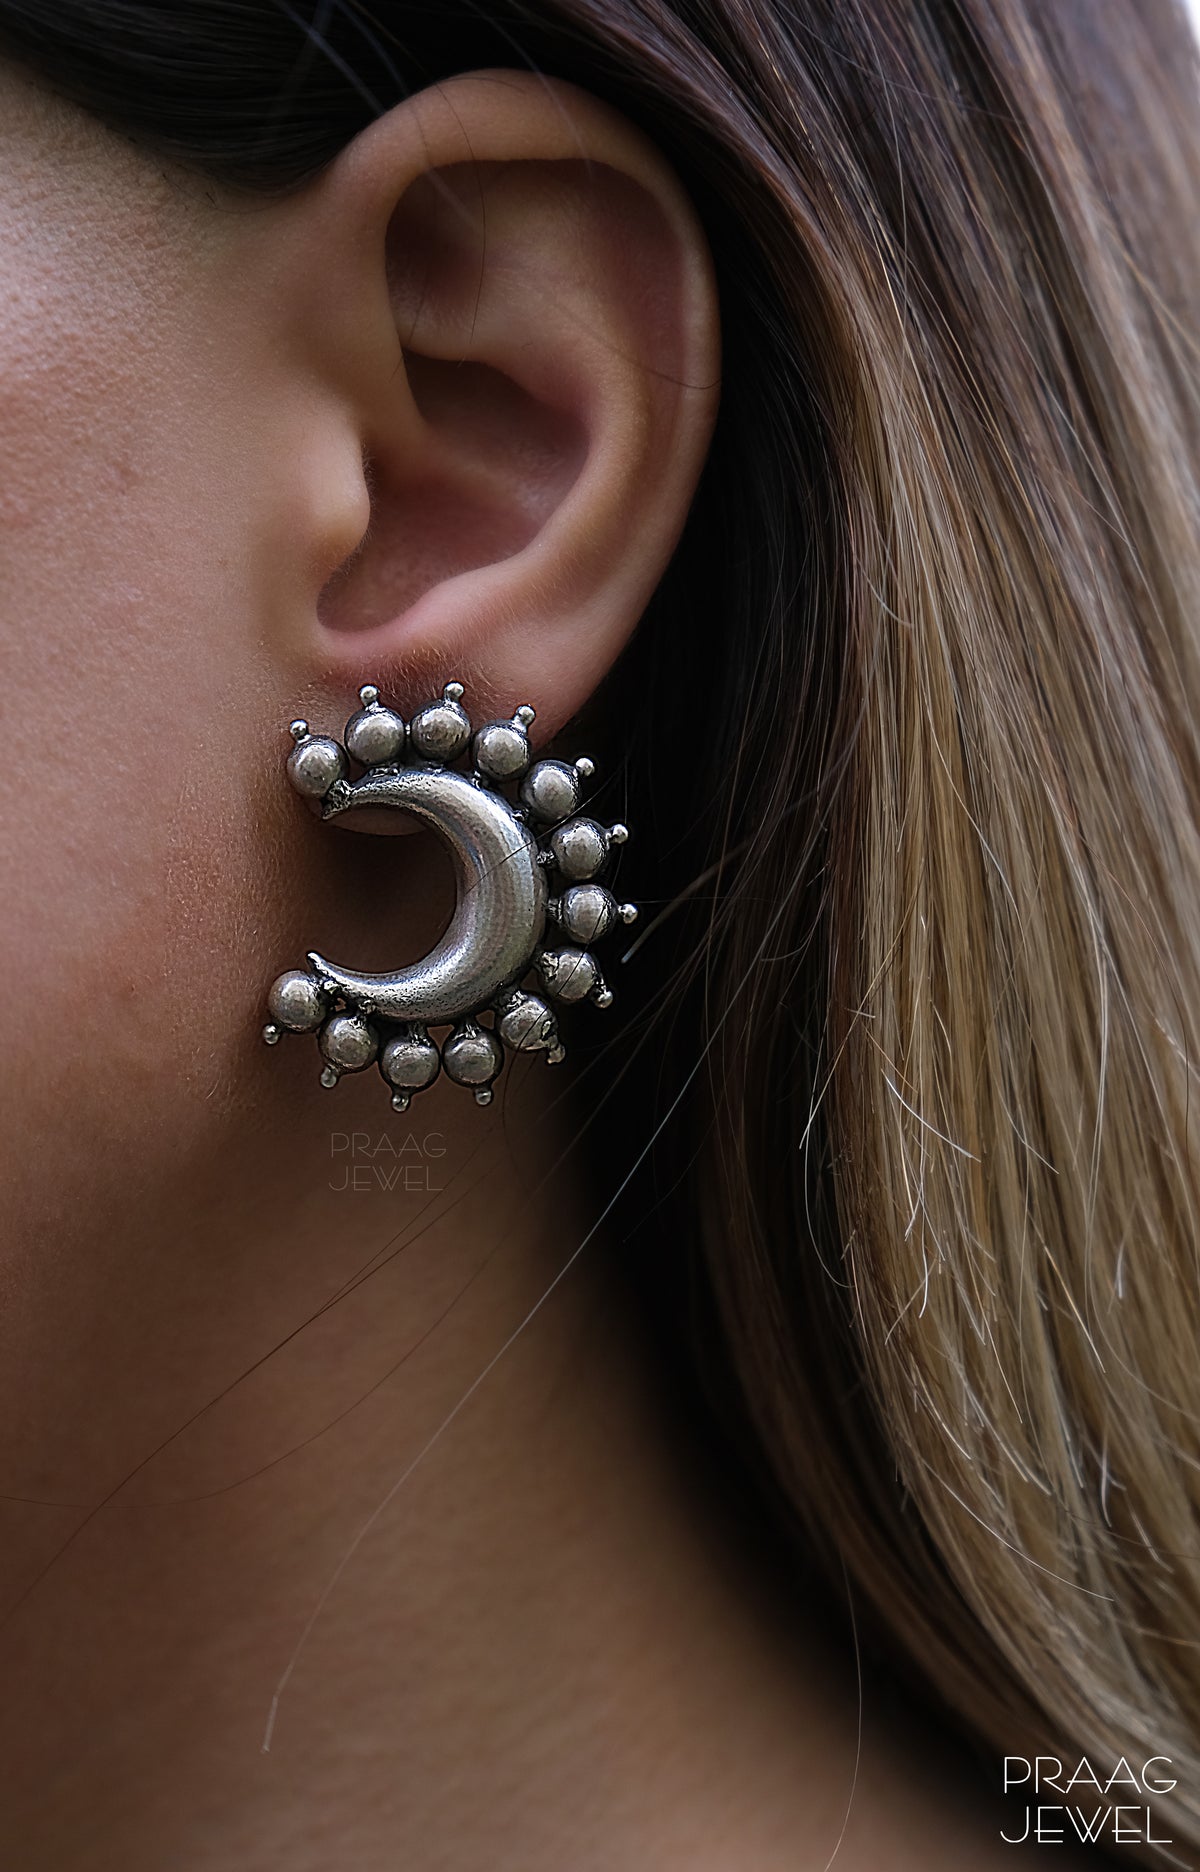 Silver Earrings Image | Silver Earrings Image | silver earring | sterling silver earring | 925 silver earring | earrings for girl 